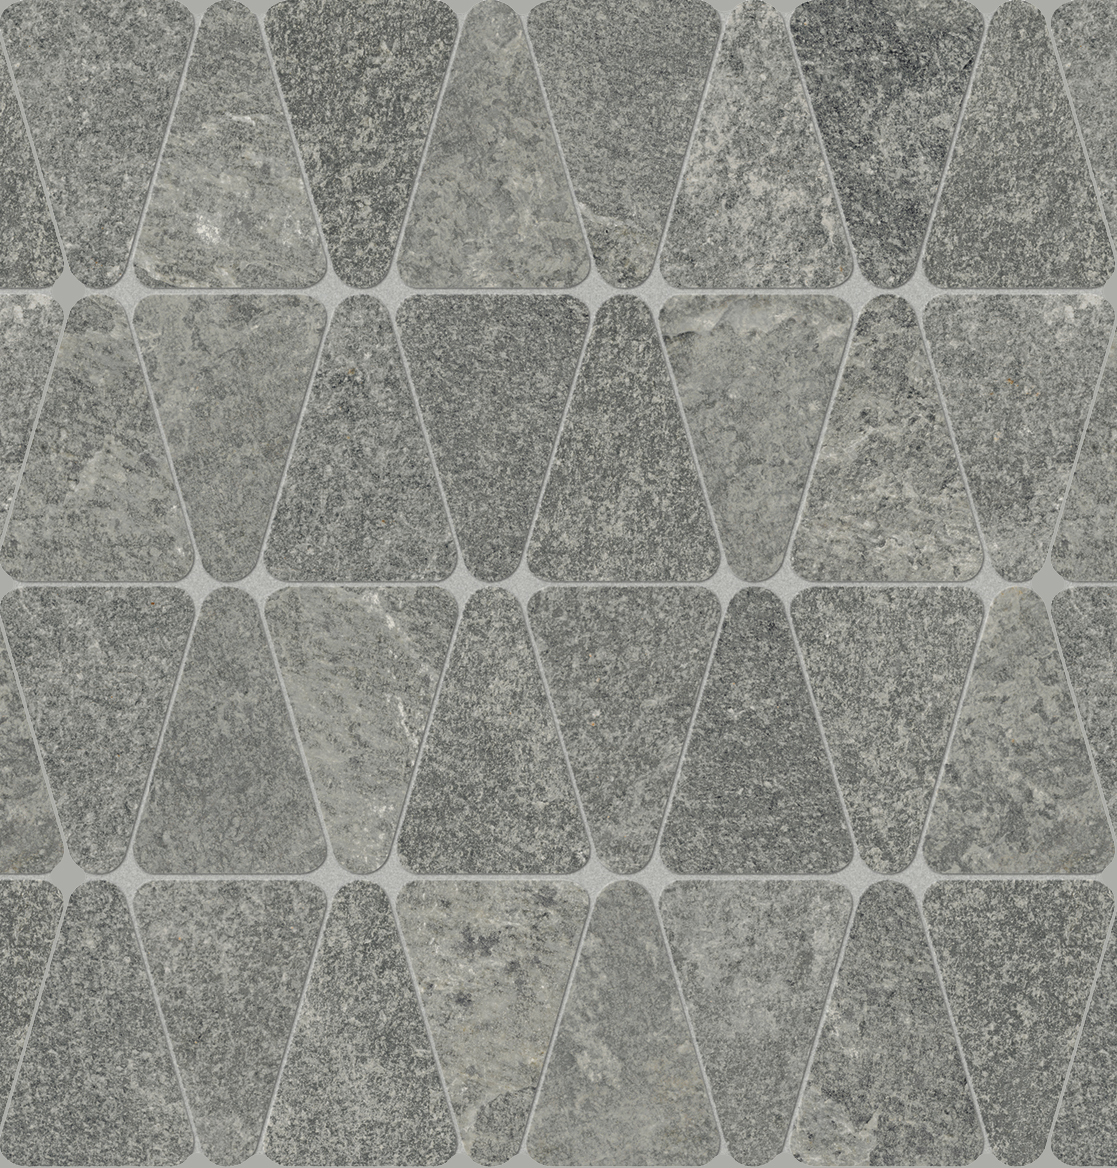 Marcacorona Graphite Strutturato Hithick Triangle Tessere J096 31x34,5cm rectified 9mm